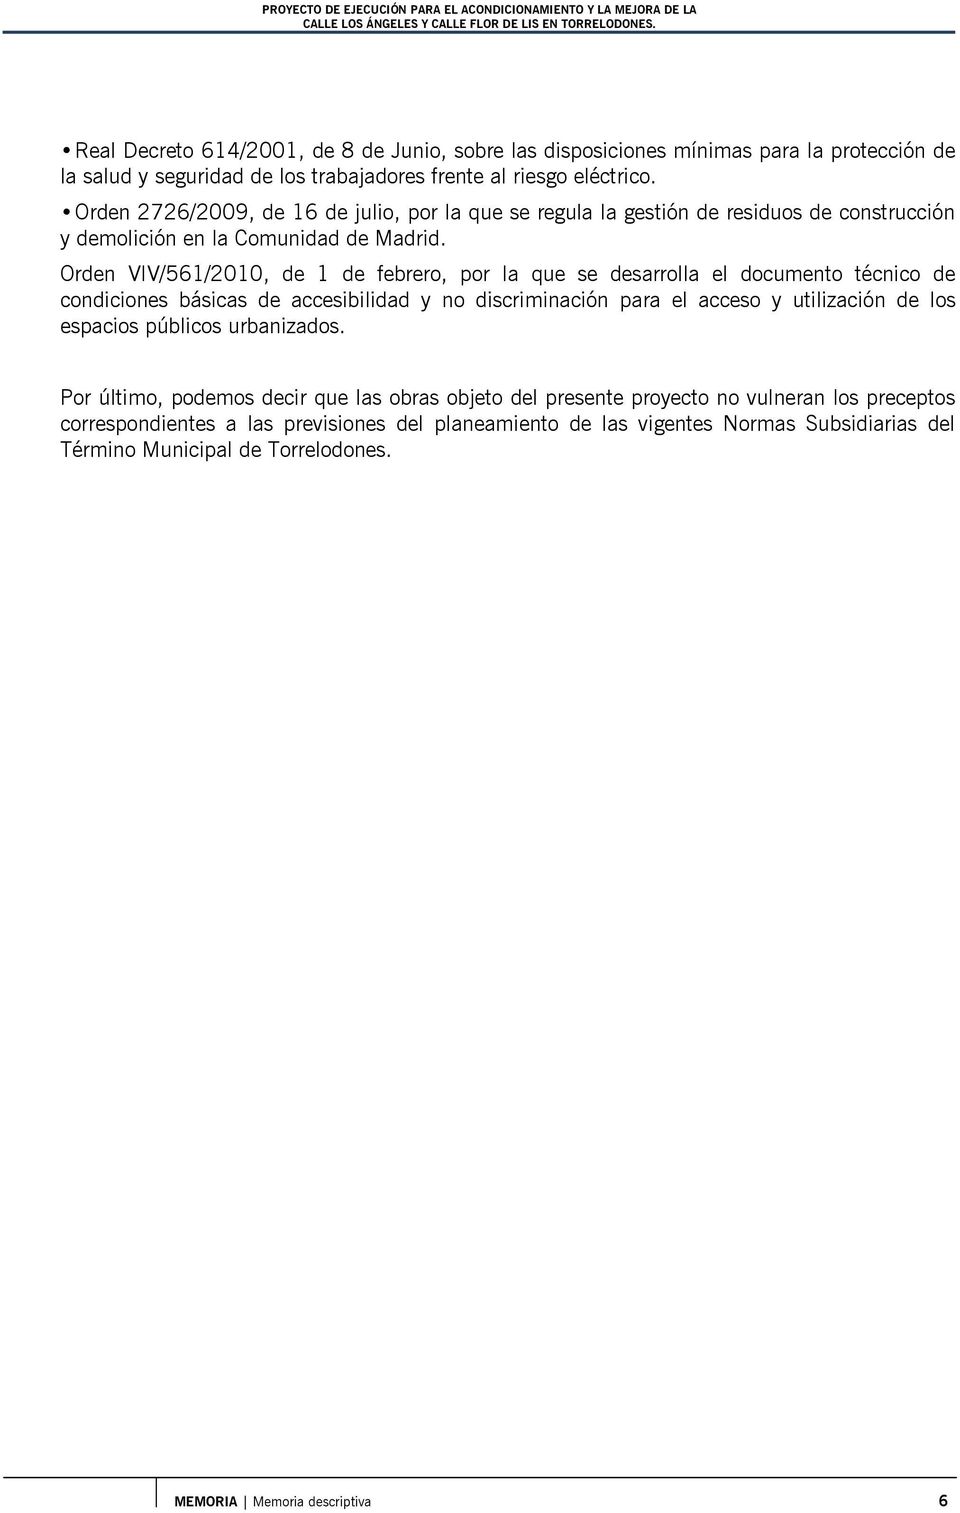 Orden 2726/2009, de 16 de julio, por la que se regula la gestión de residuos de construcción y demolición en la Comunidad de Madrid.